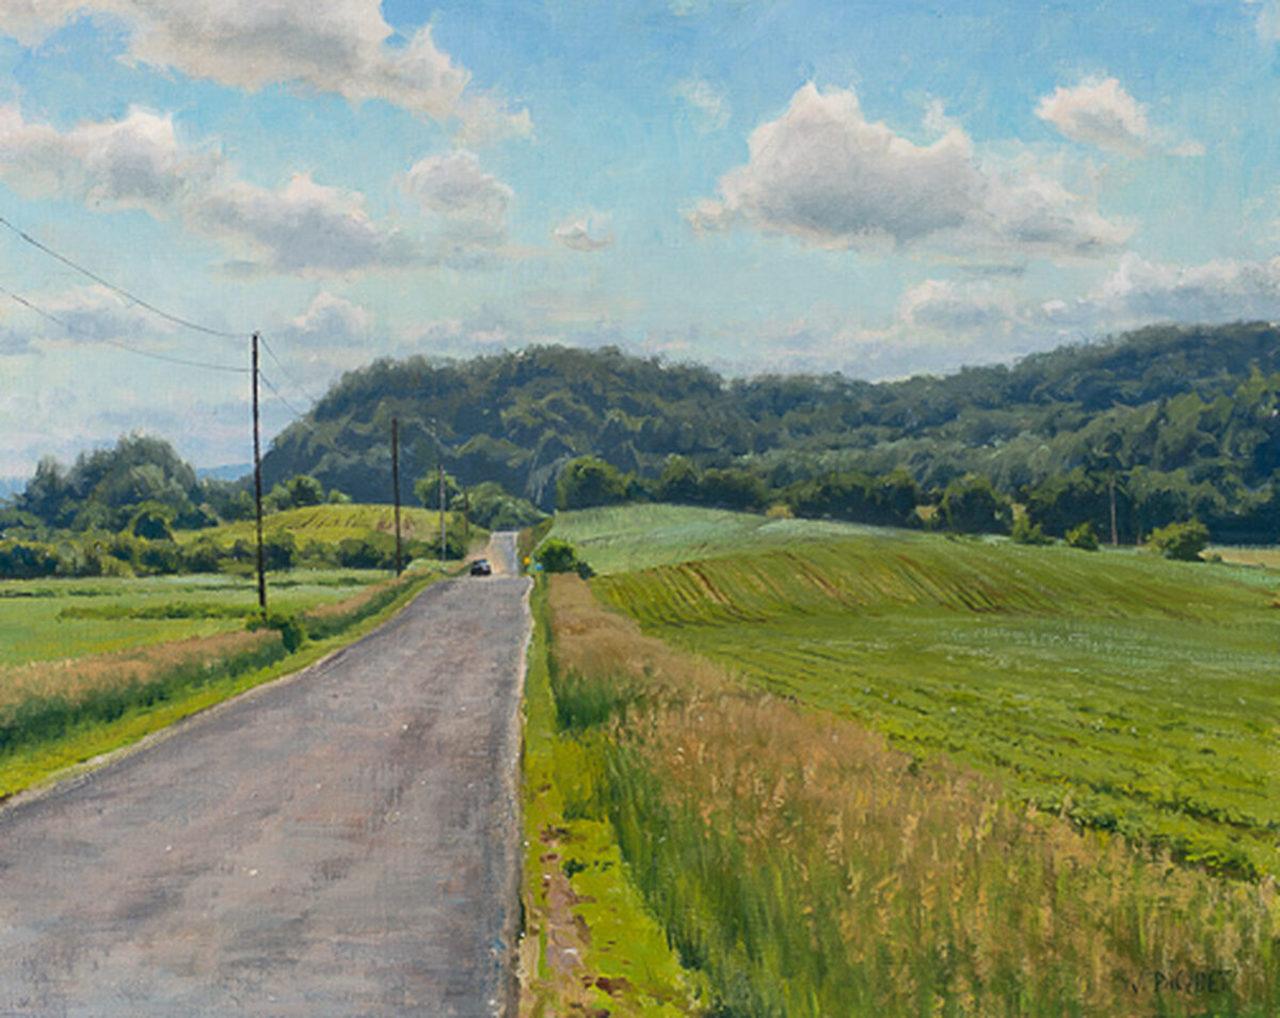 Joe Paquet  Landscape Painting - "Rural Farm Delivery" pastoral landscape oil painting, painted en plain air